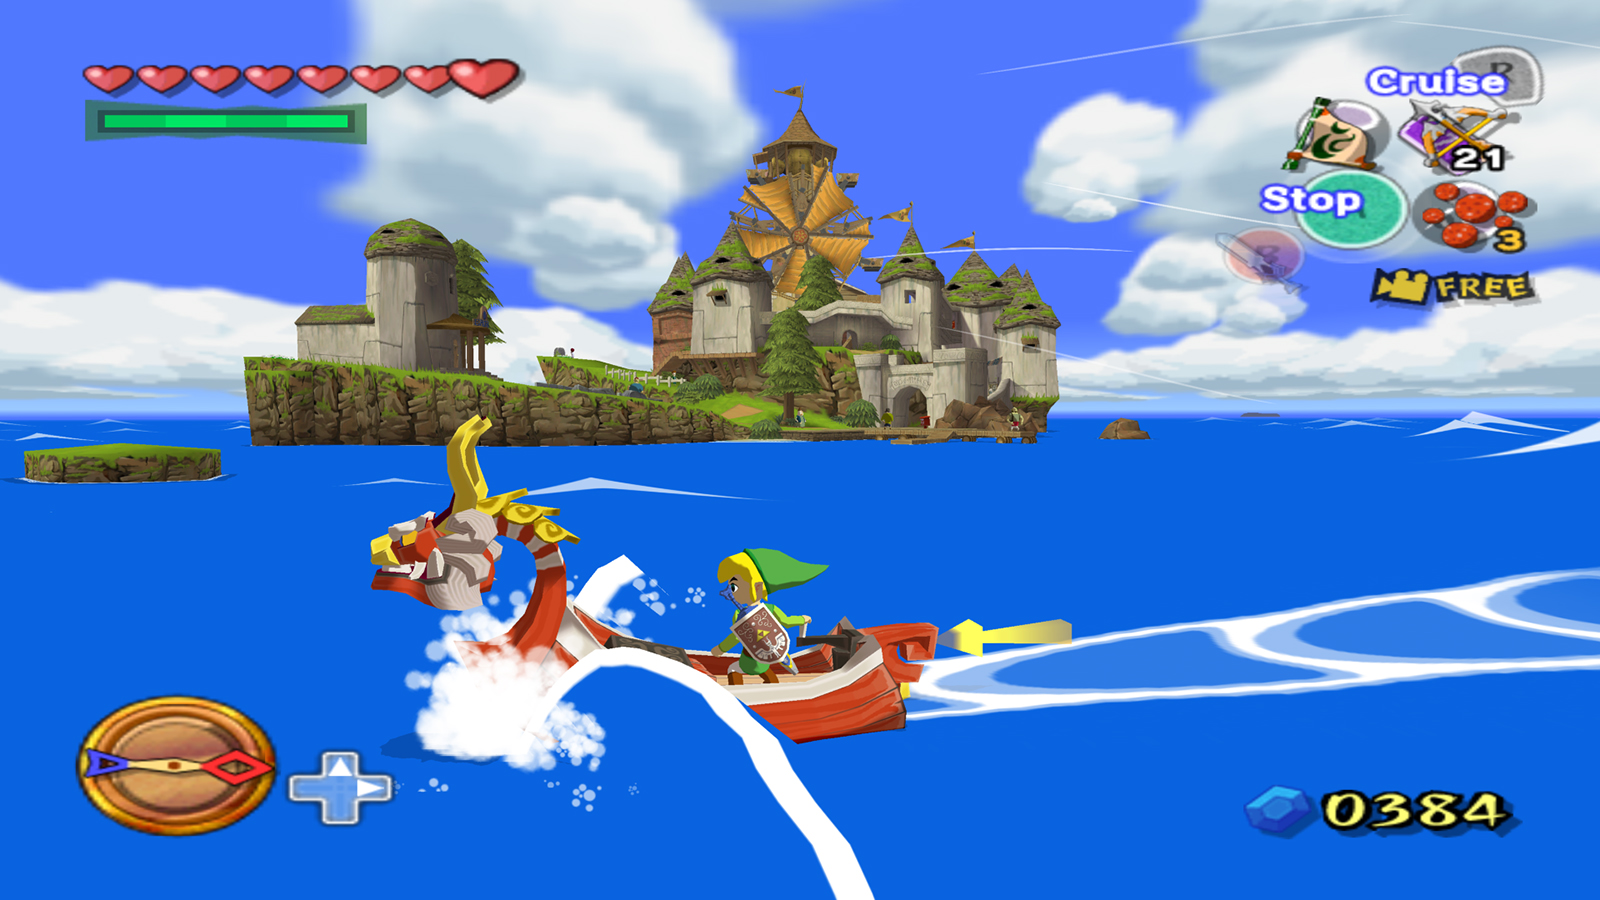 The Legend of Zelda: The Wind Waker ocupará 2.6GB de espaço